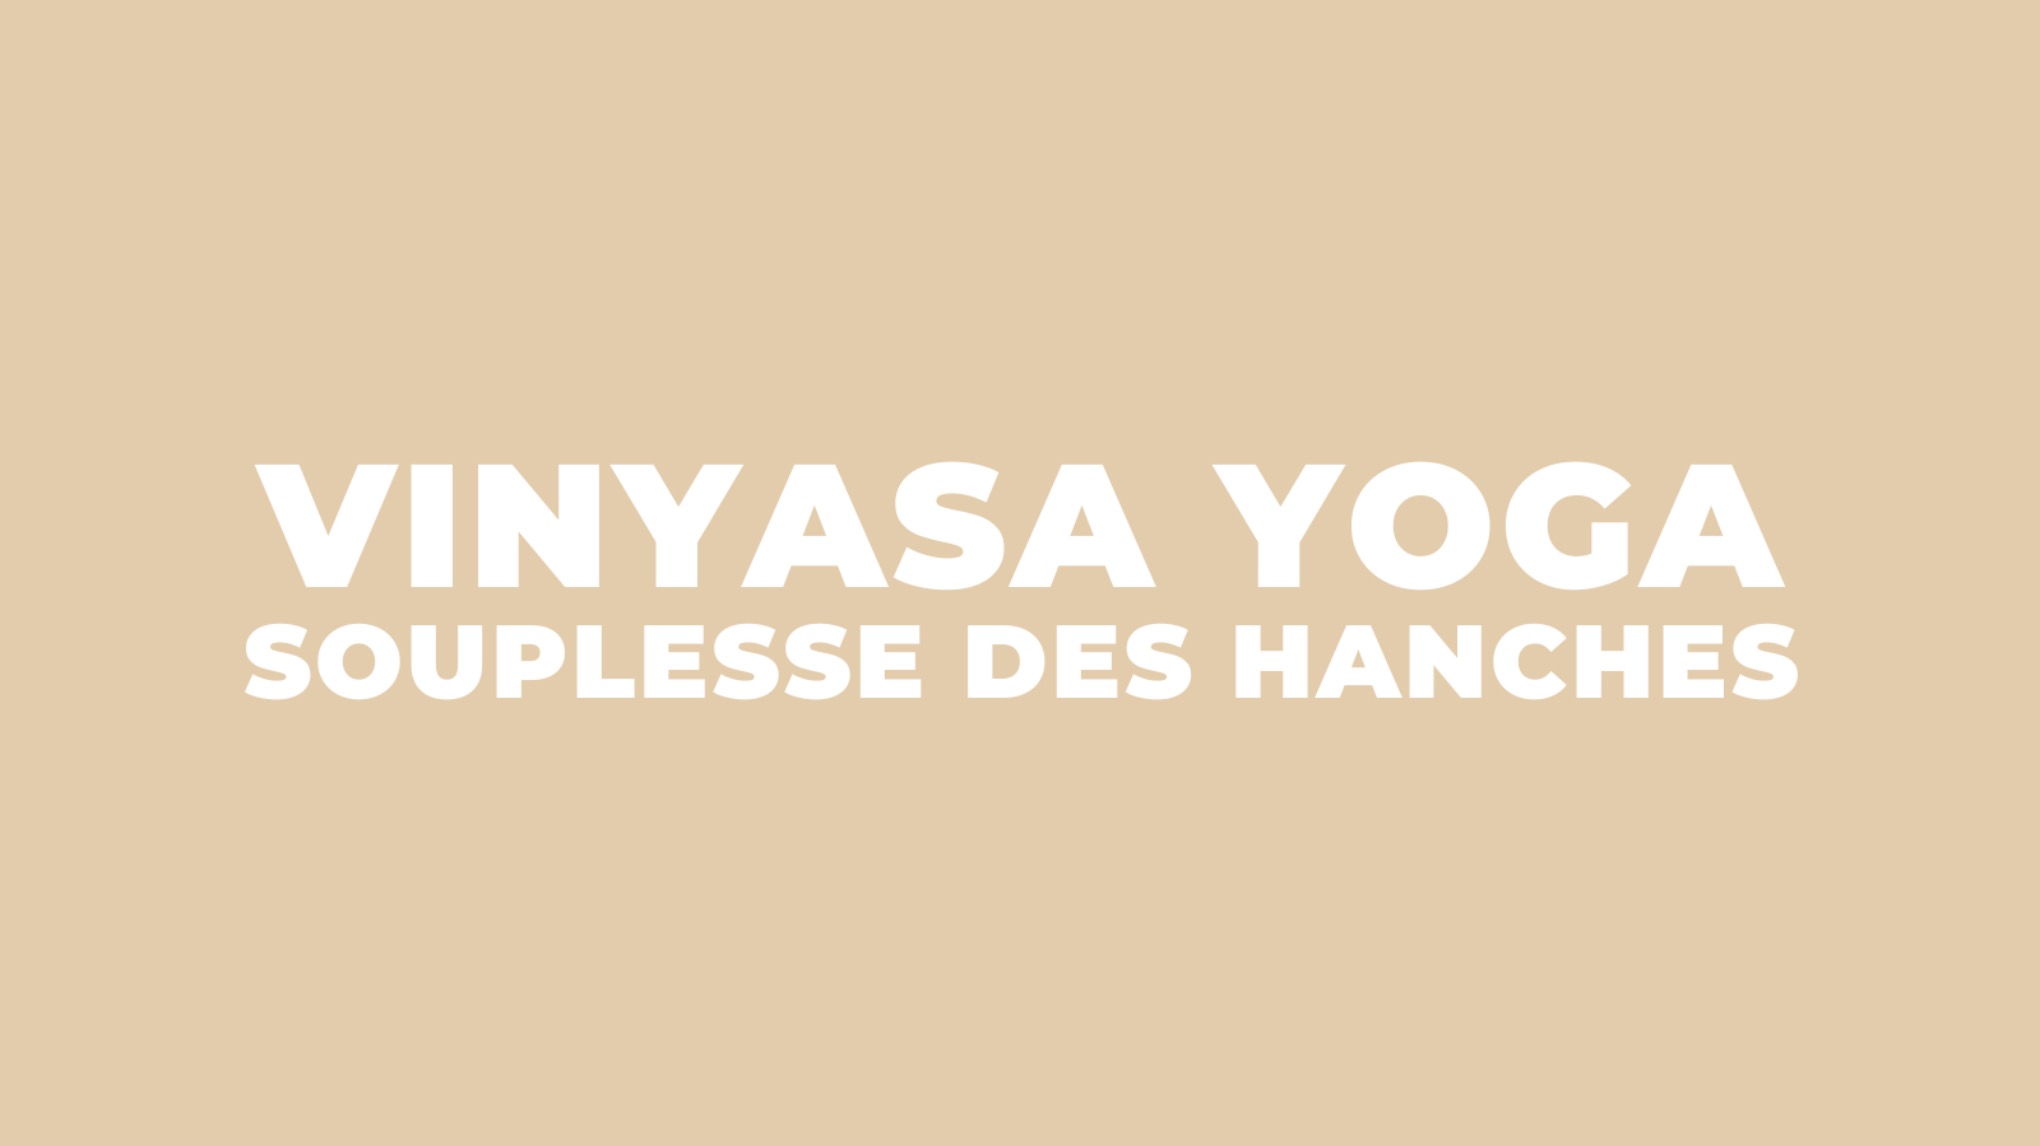 Vinyasa Yoga - Souplesse des hanches